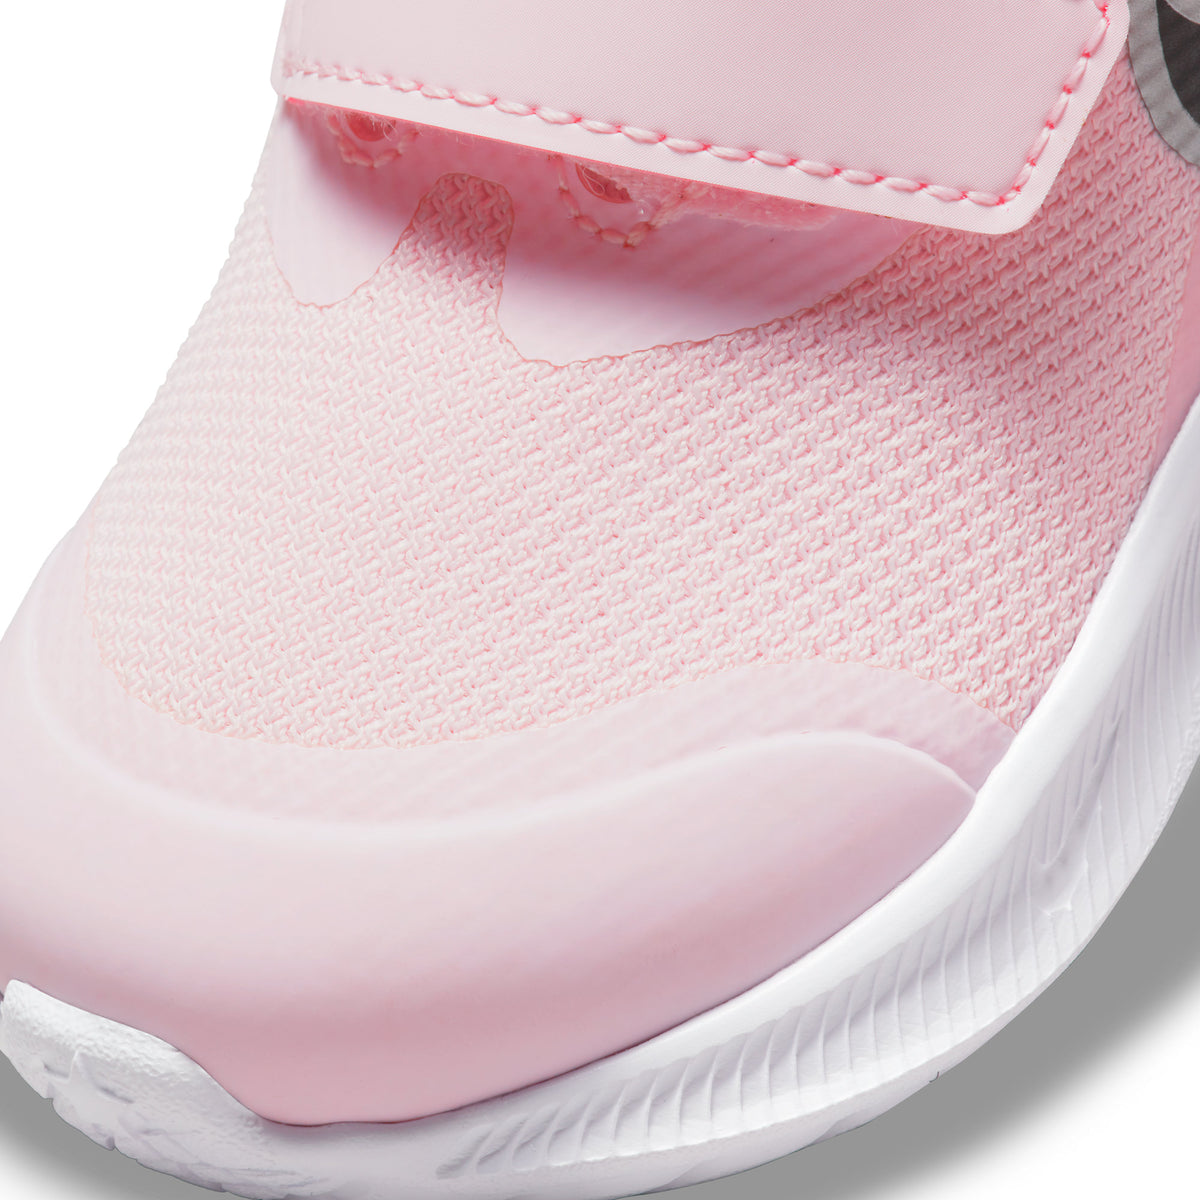 Zapatilla Nike Star Runner 3 de Niño color Rosa